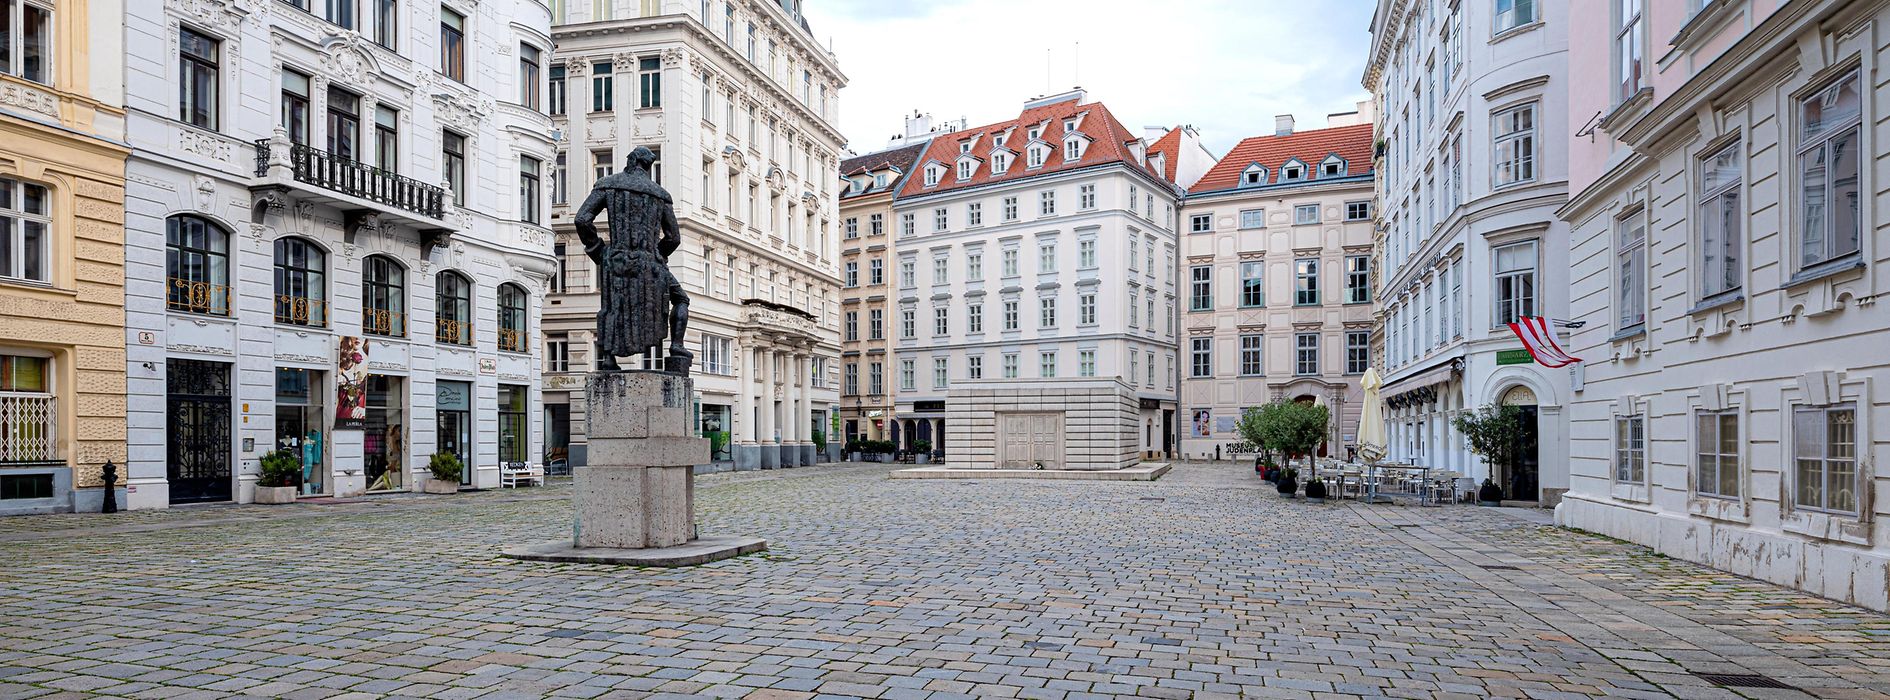 Monumento commemorativo sulla Judenplatz 